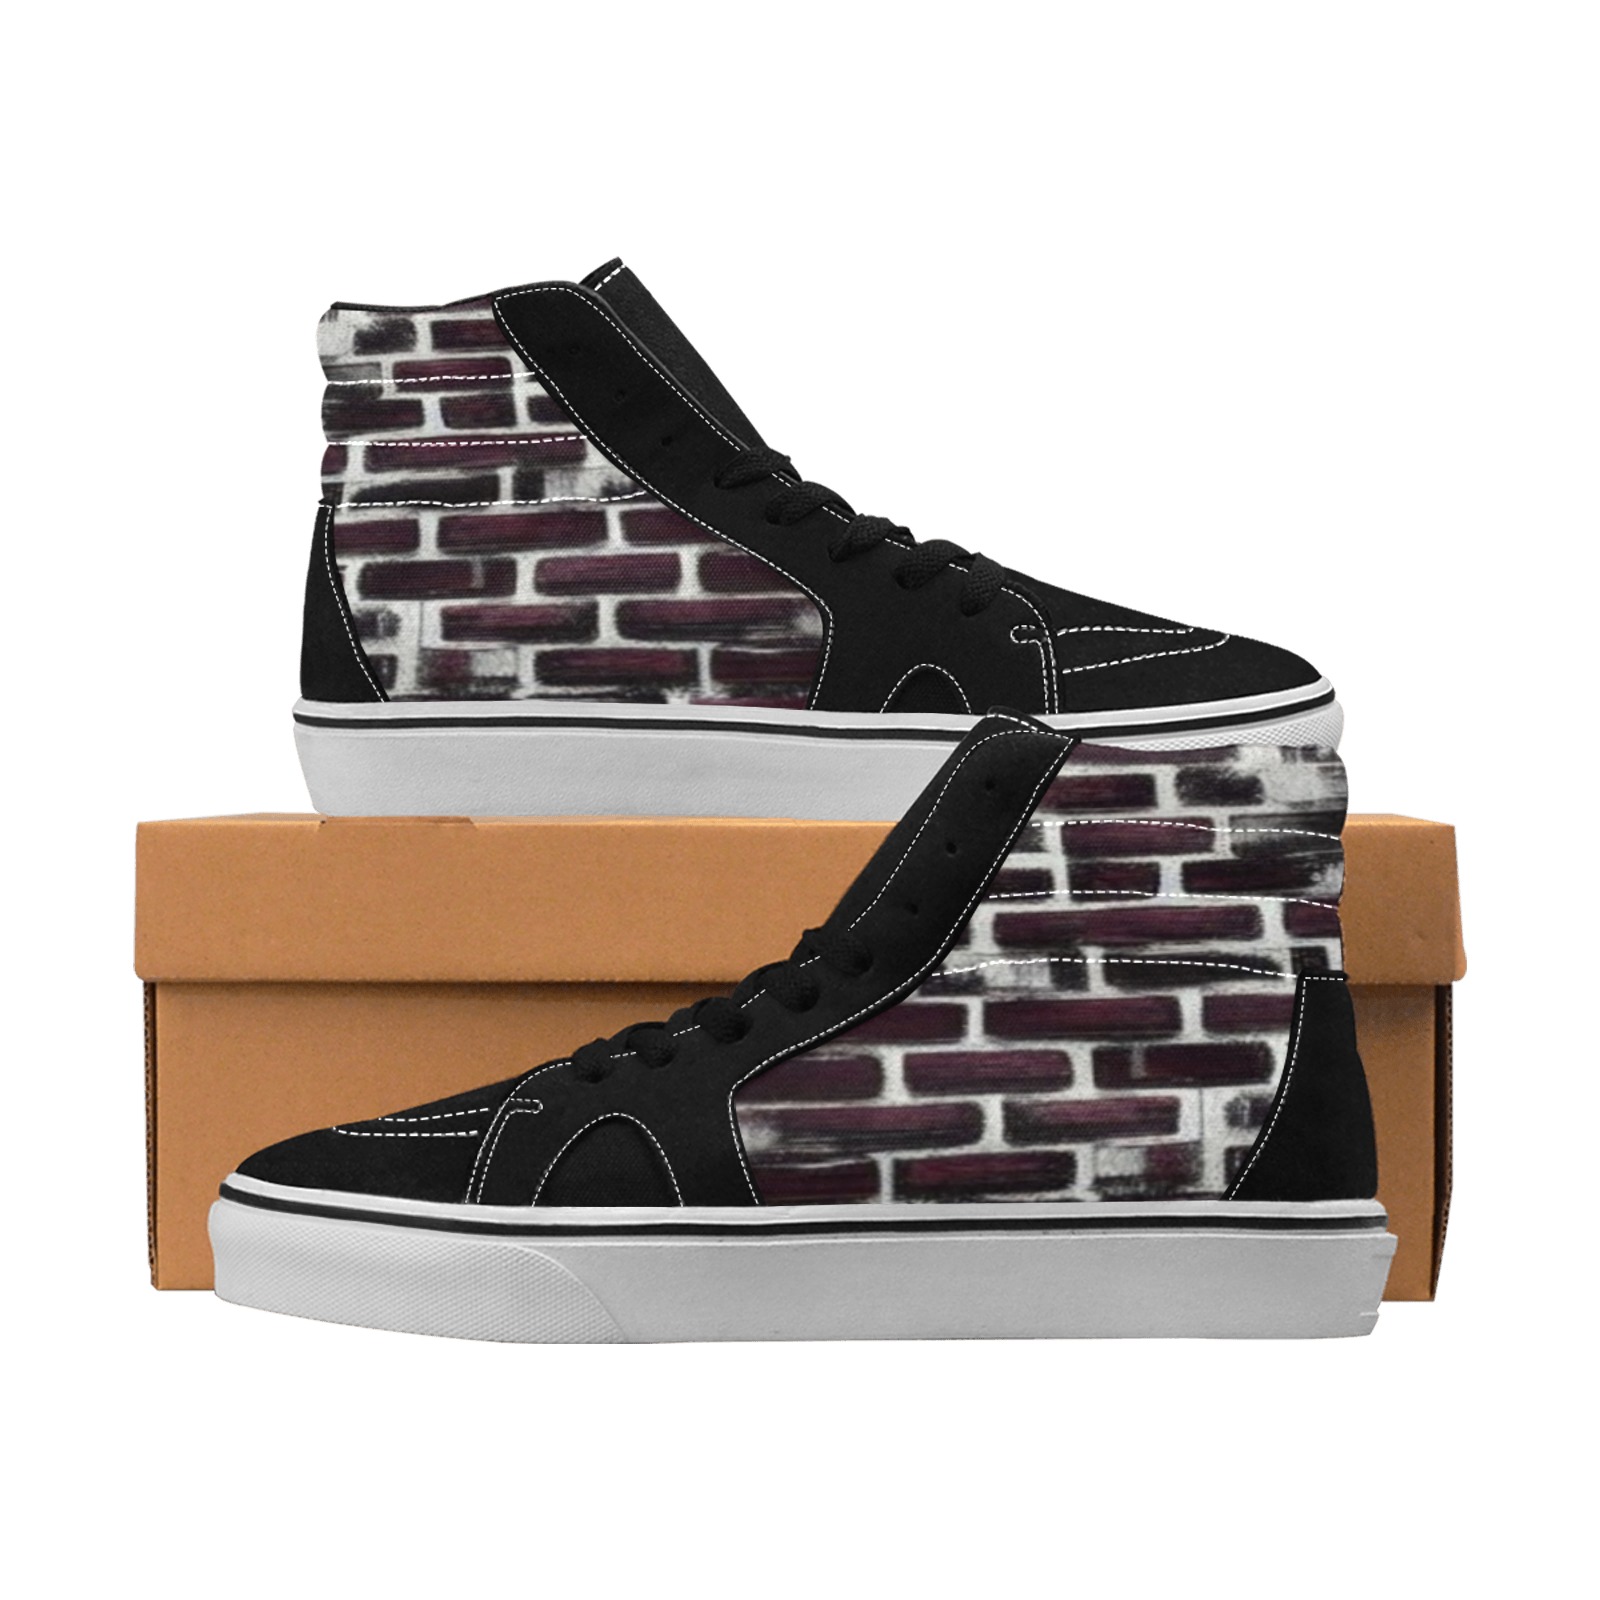 burgundy bricks Men's High Top Skateboarding Shoes (Model E001-1)